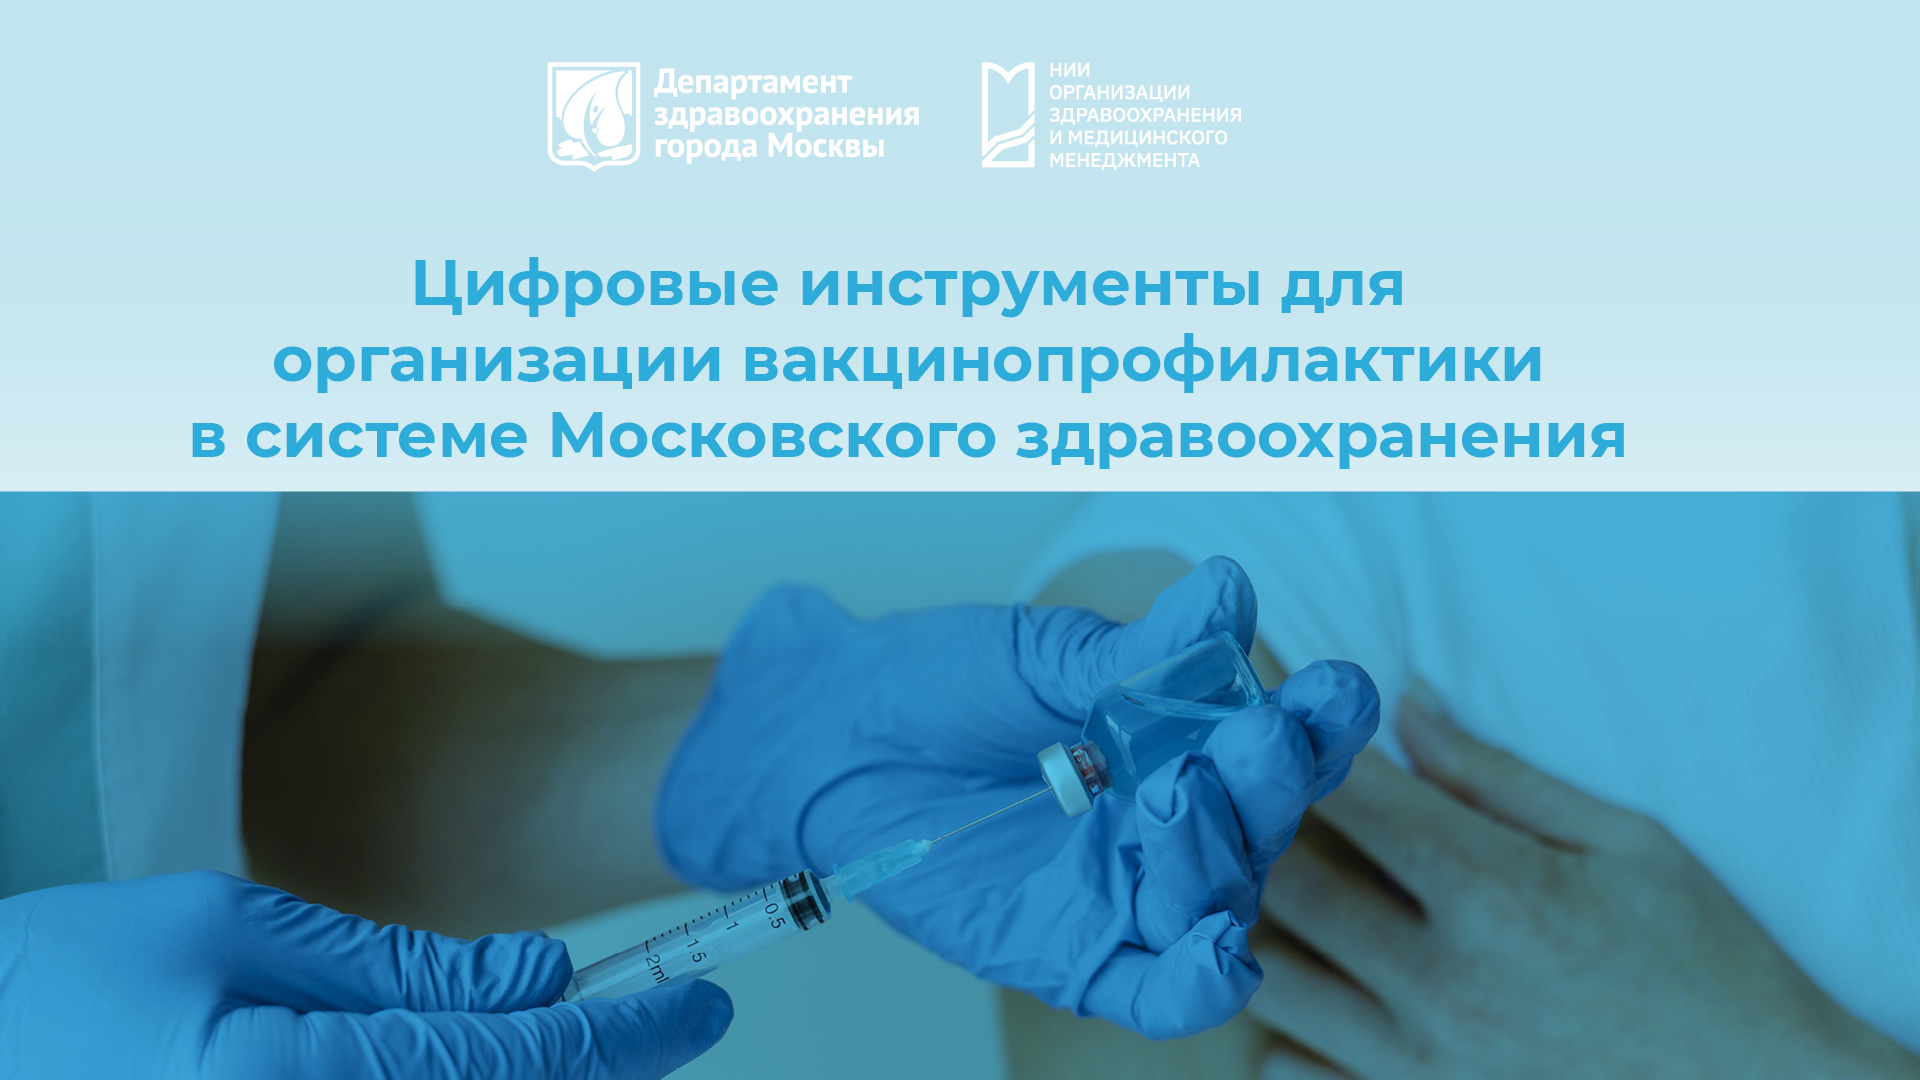 Цифровые инструменты для организации вакцинопрофилактики в системе московского здравоохранения